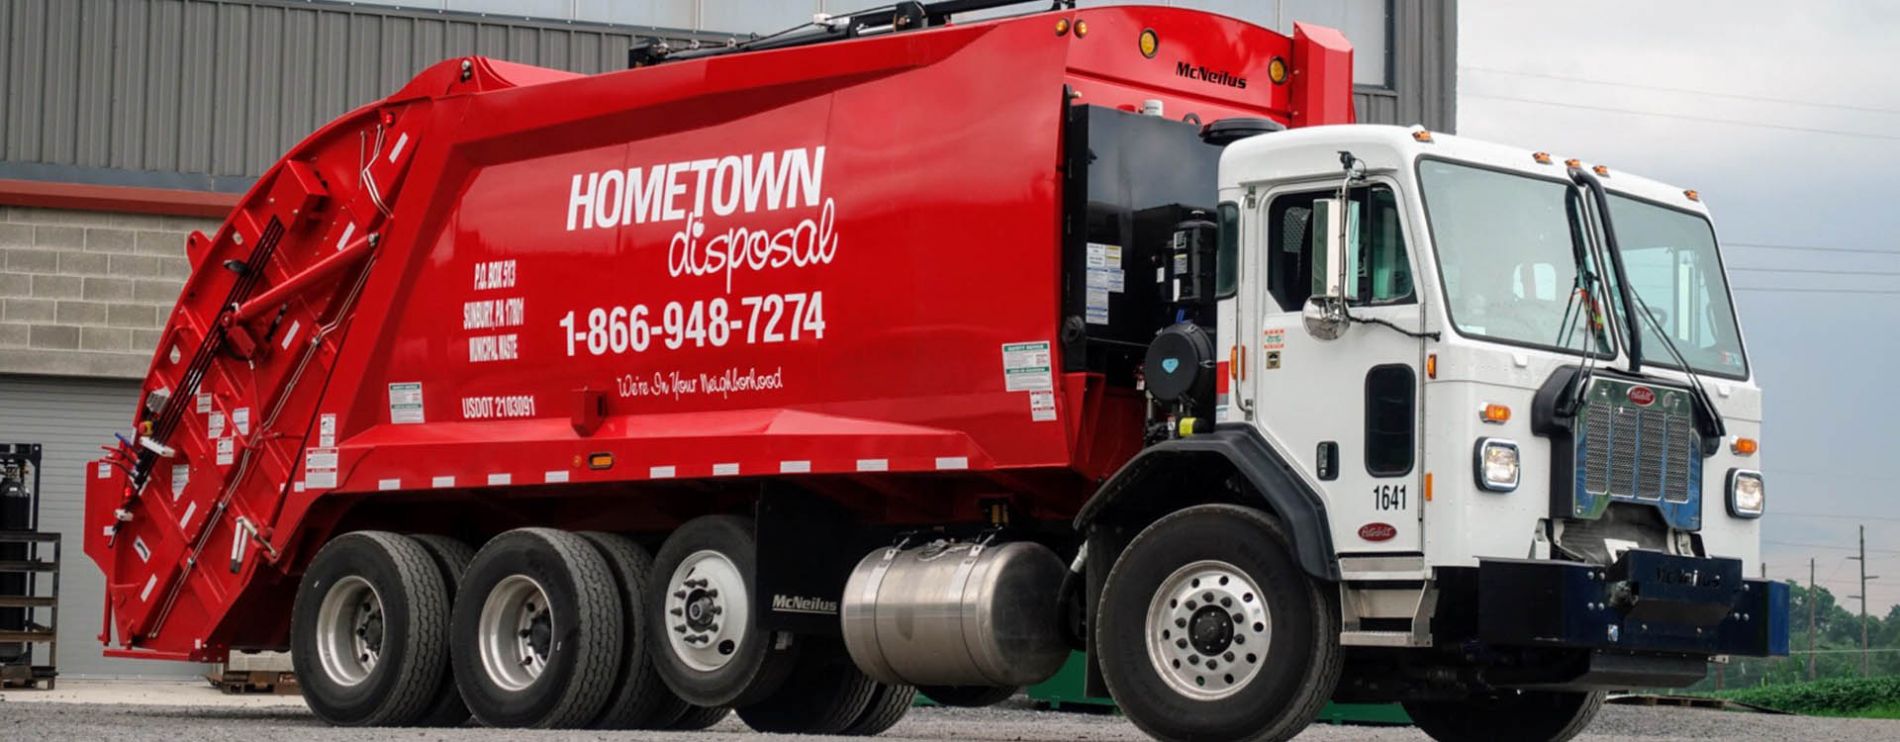 HomeTown Disposal truck.